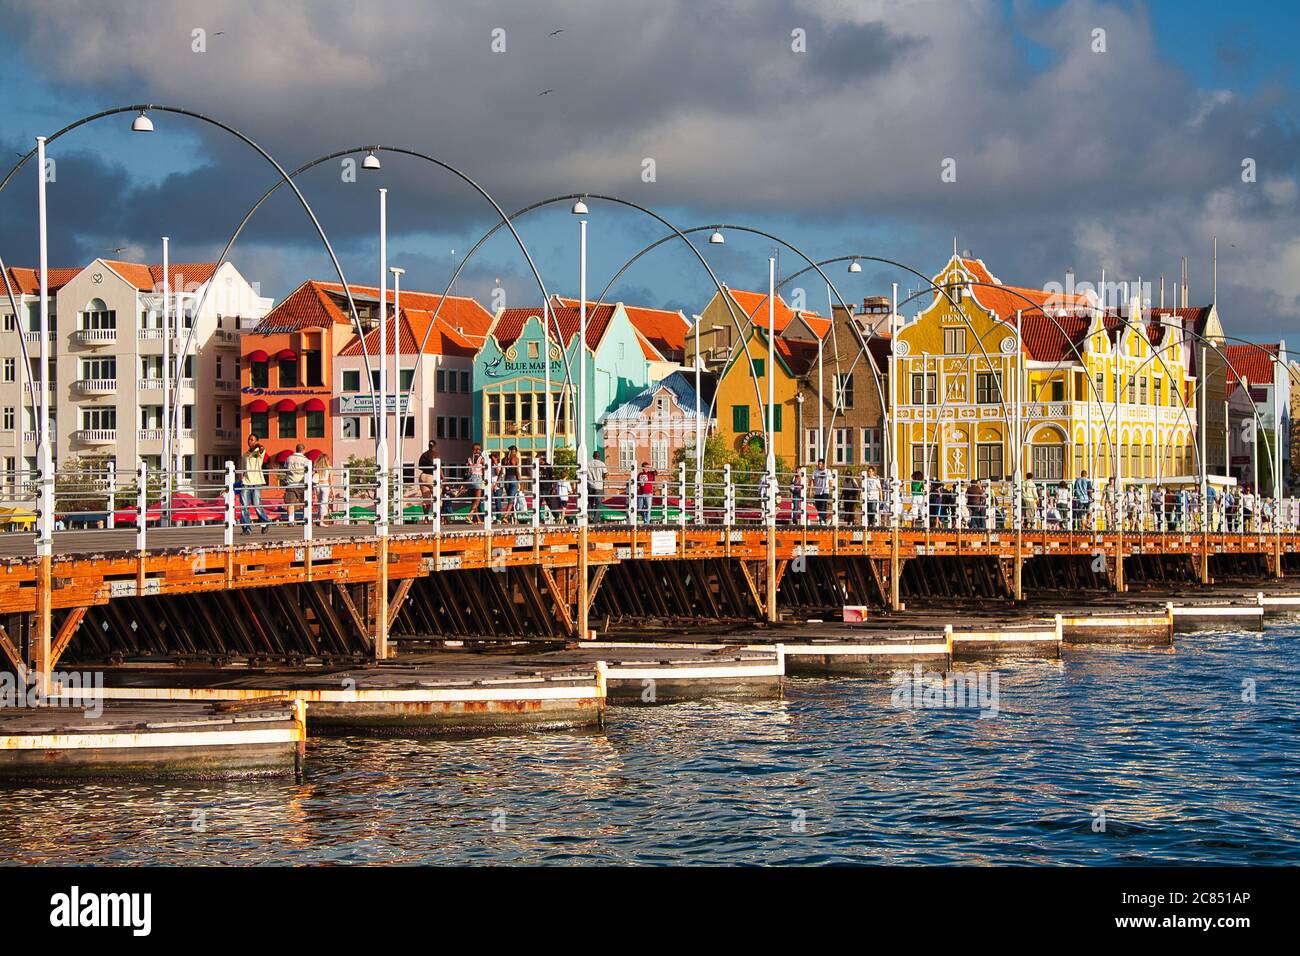 Persone che camminano sul Queen Emma Bridge con edifici in tipico stile olandese sullo sfondo, Willemstat, Curacao, i Caraibi, Indie Occidentali Foto Stock